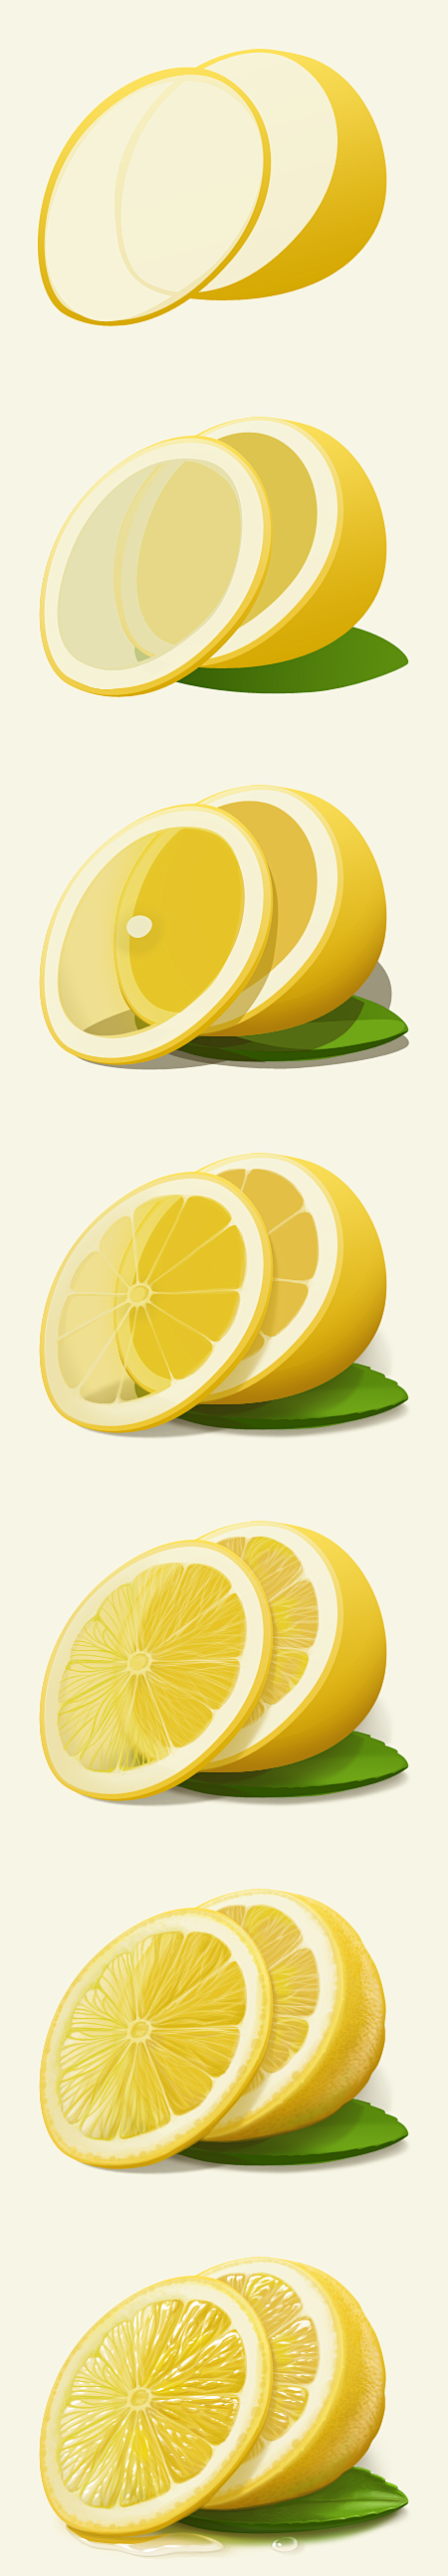 Lemon_process